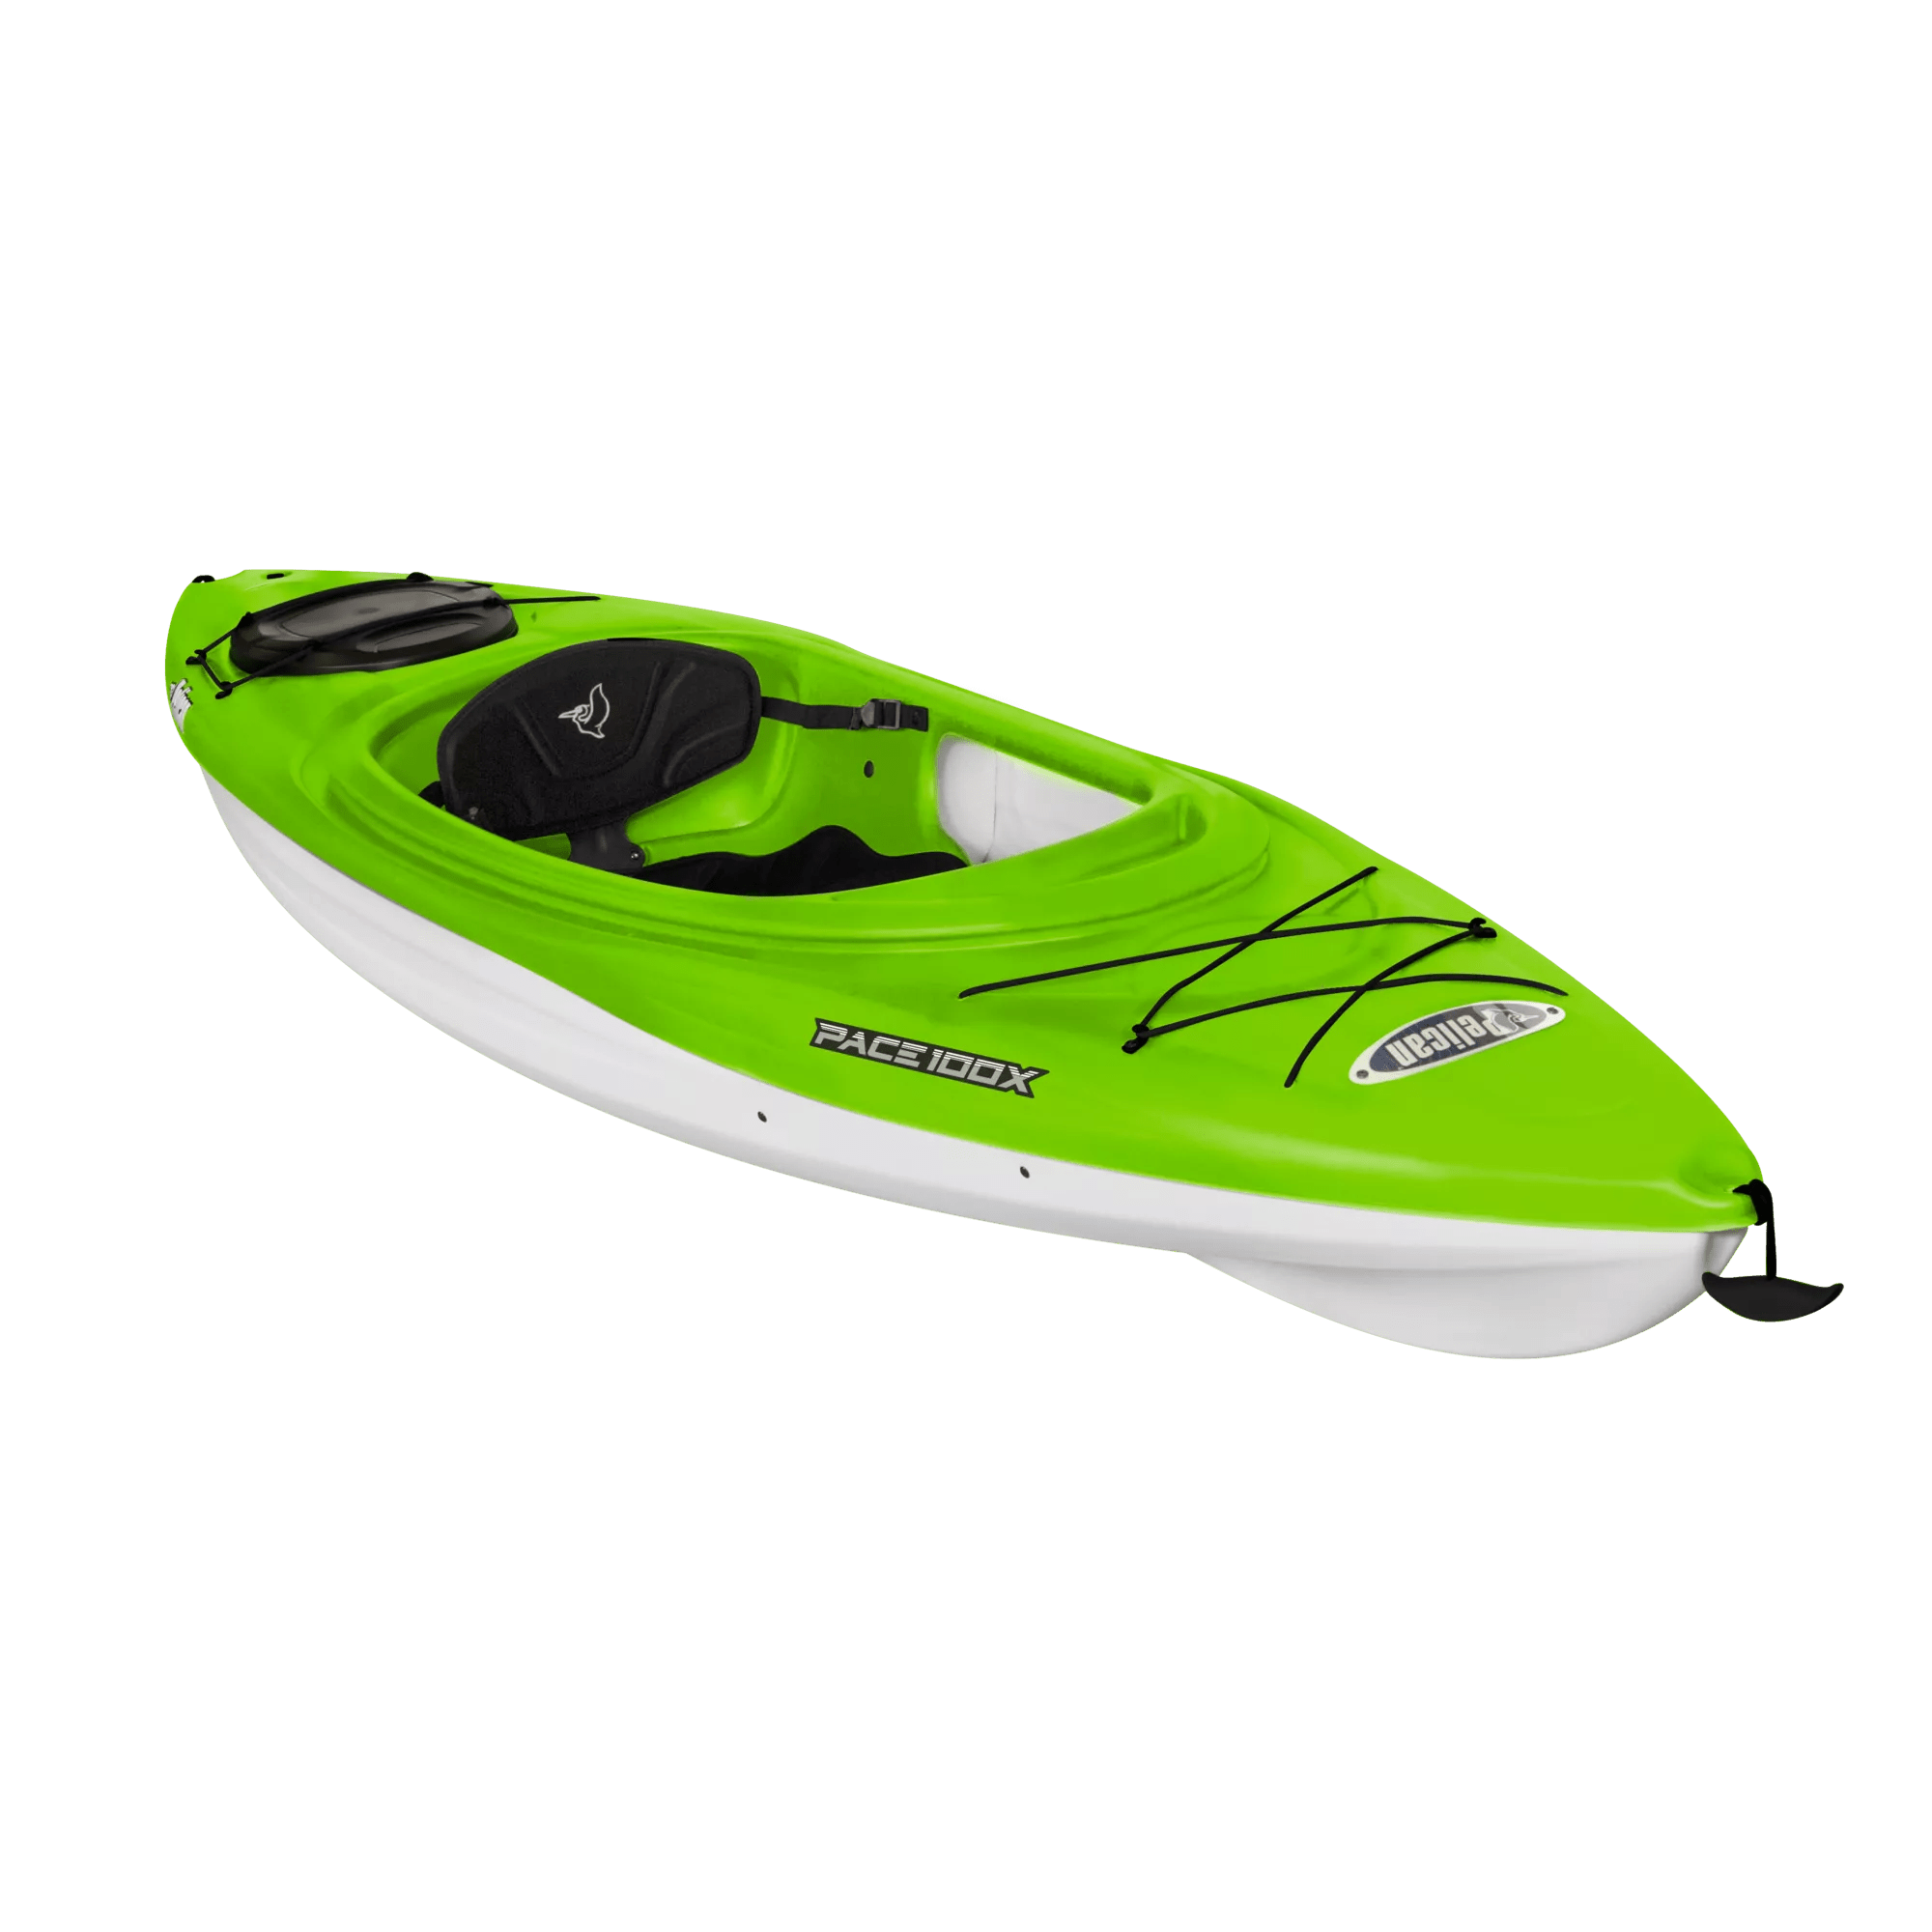 PELICAN - Pace 100X Sit-in Recreational Kayak -  - KXA10P401 - ISO 